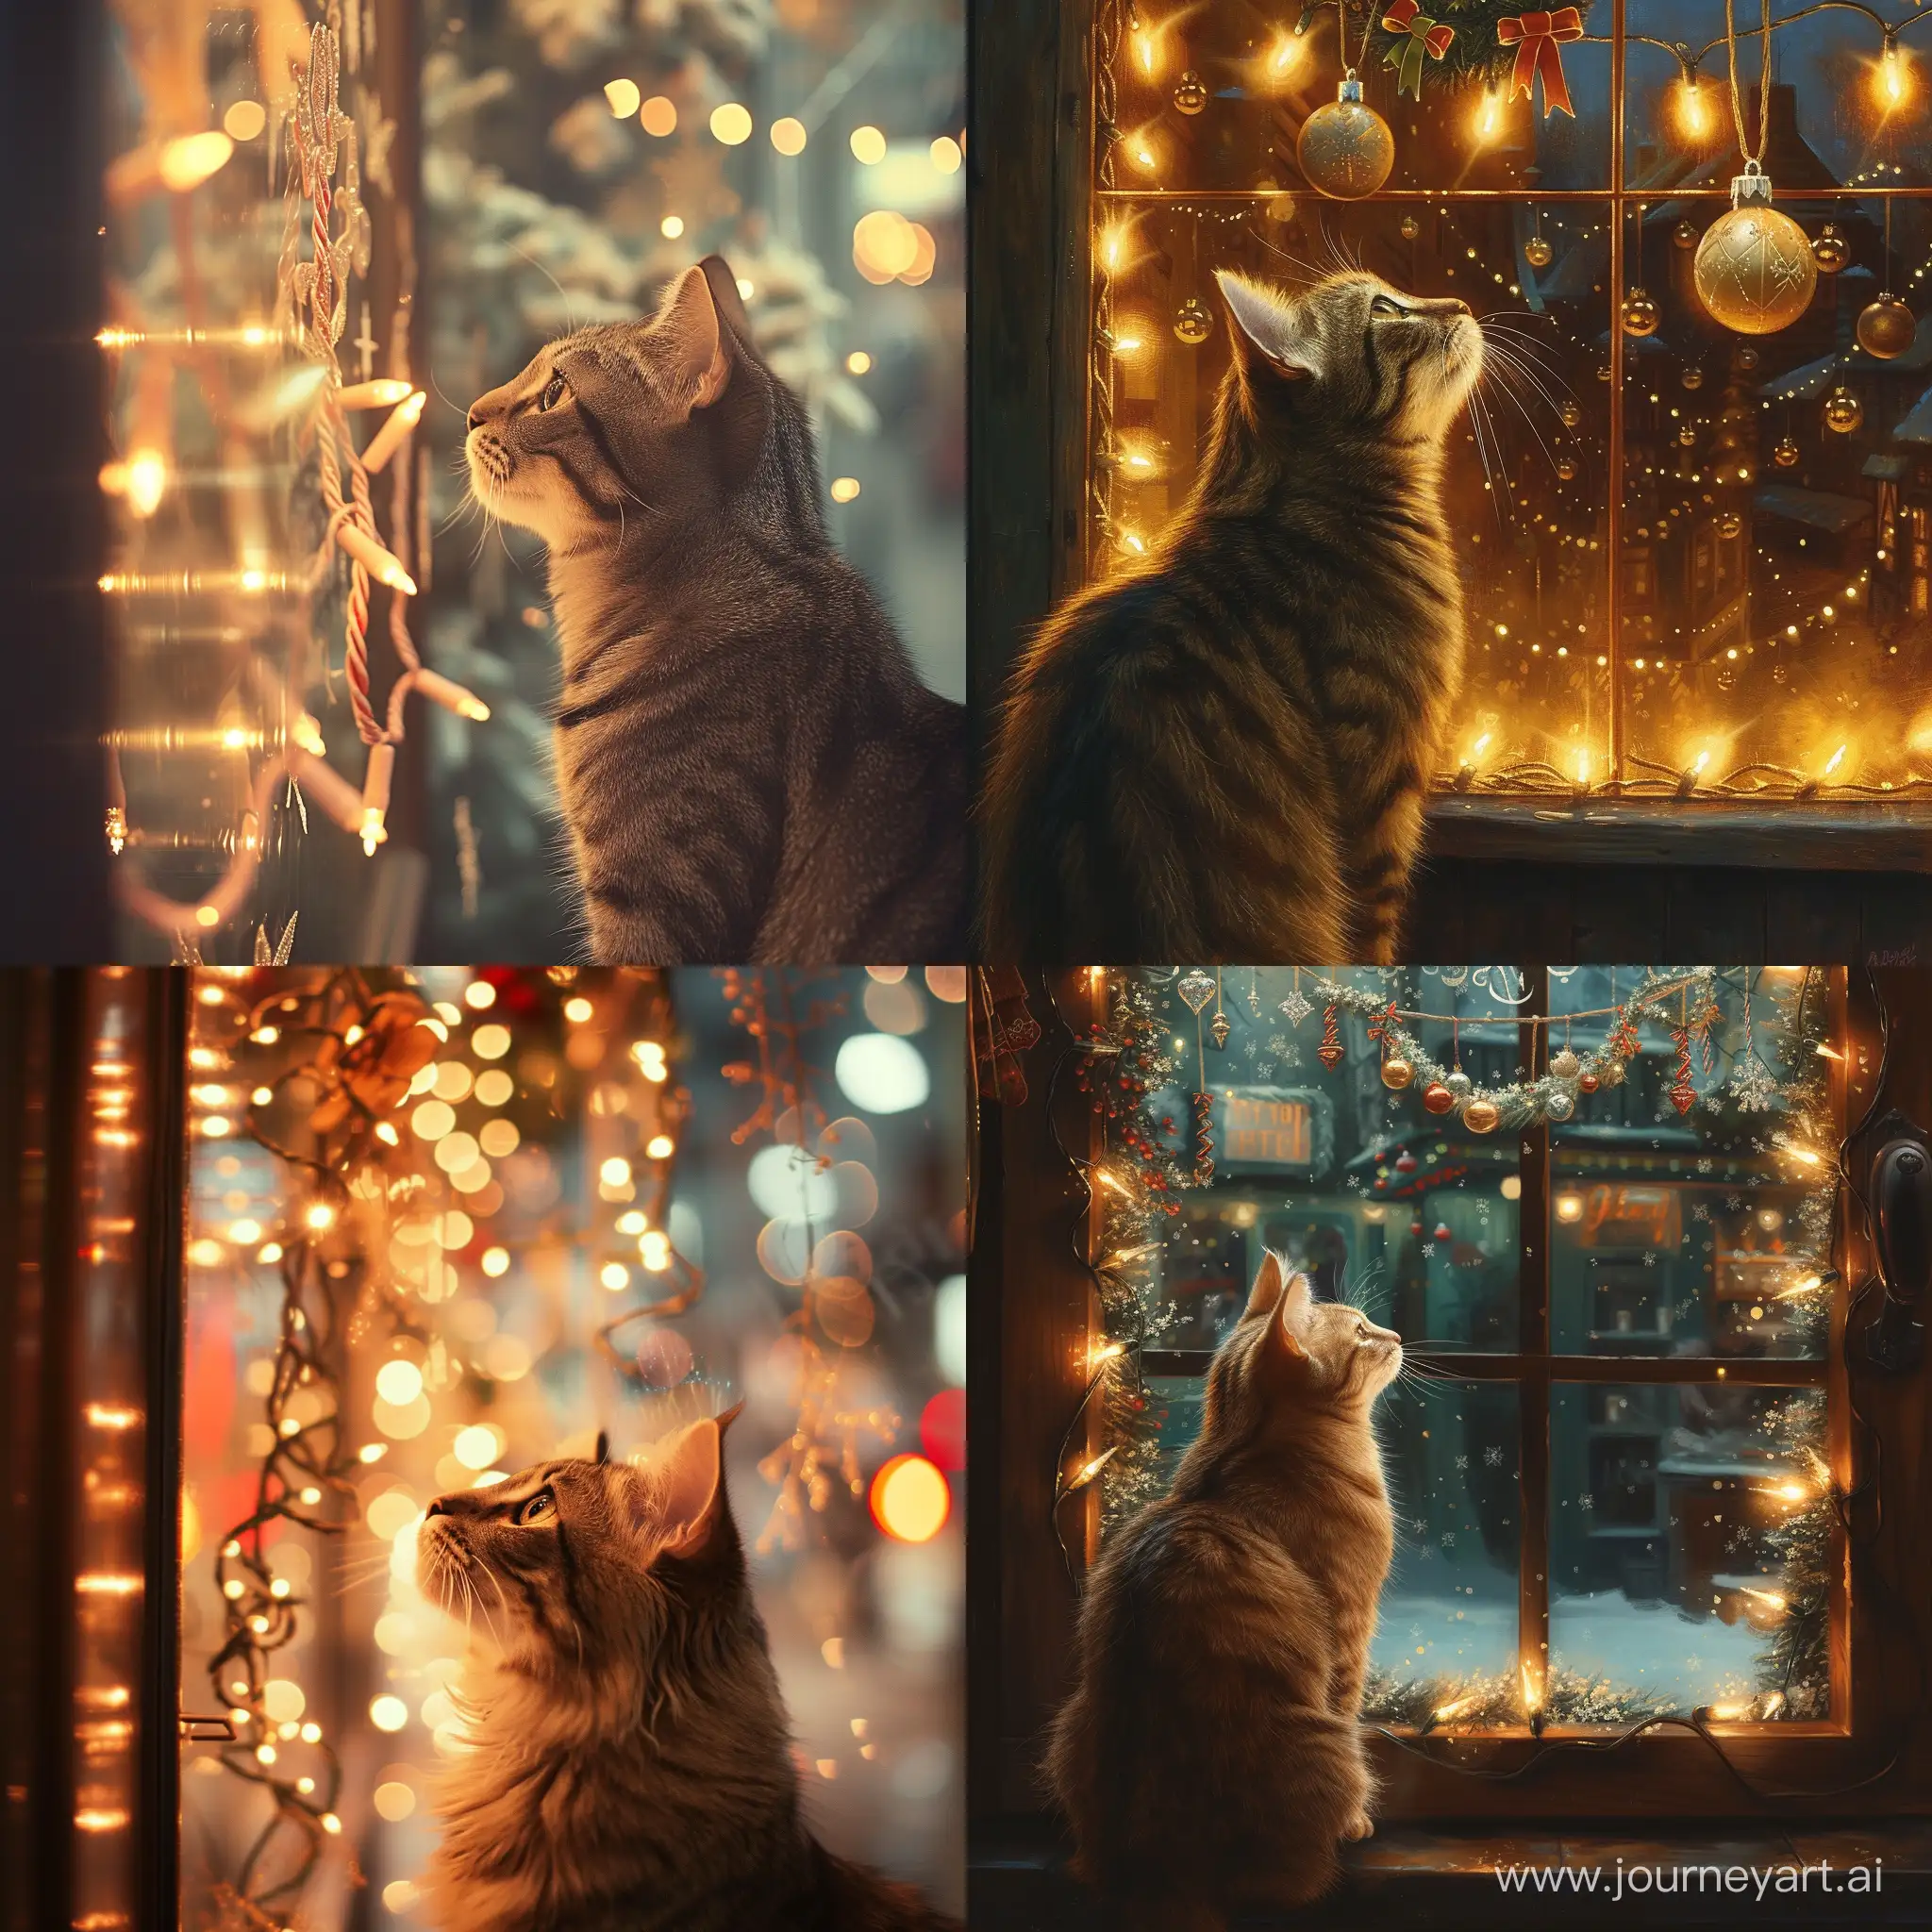 Кот заворожённо смотрит на витрину магазина увешанную мигающими ёлочными гирляндами.